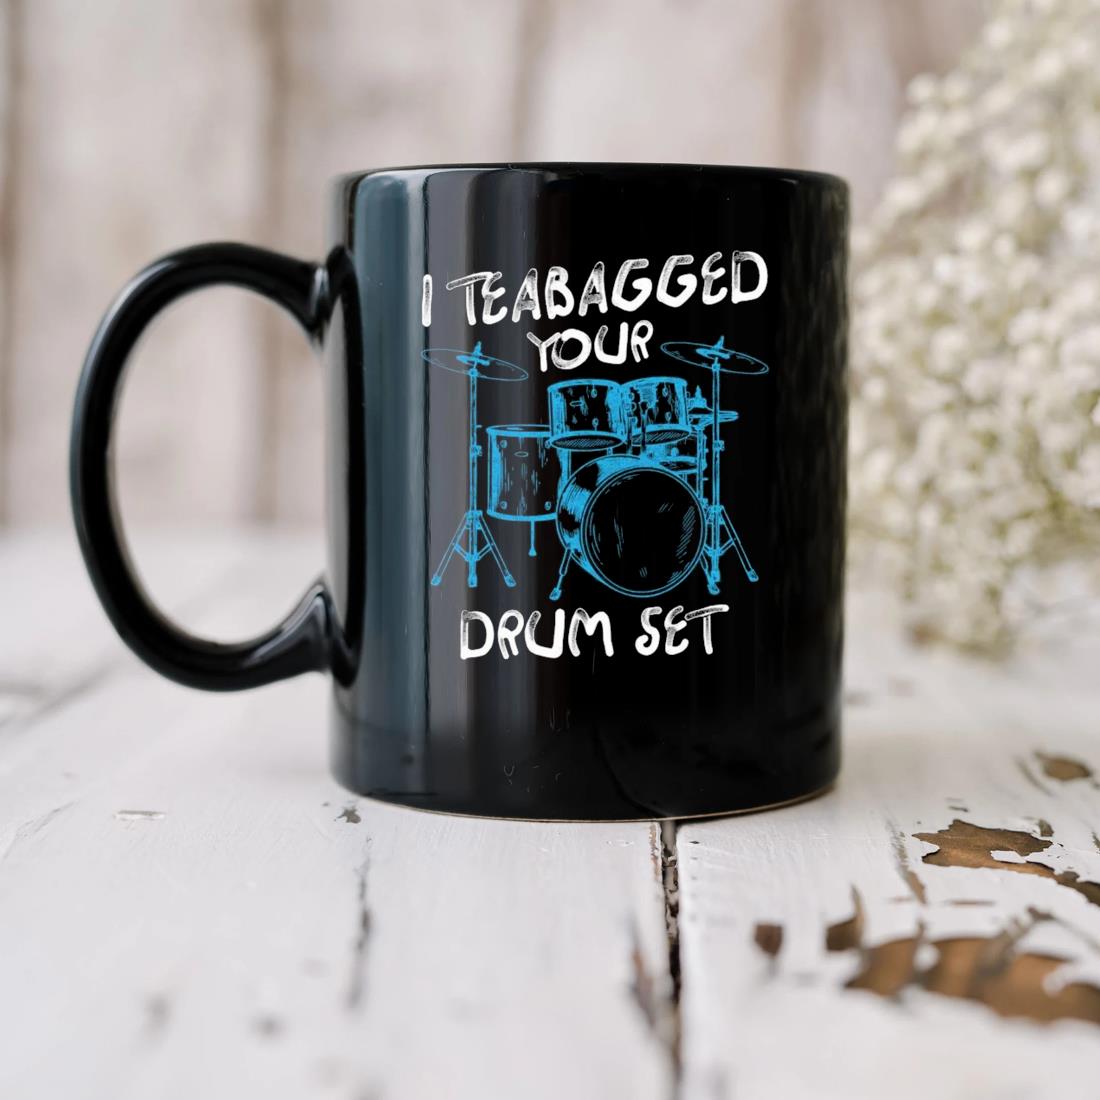 I Teabagged Your Drum Set Mug